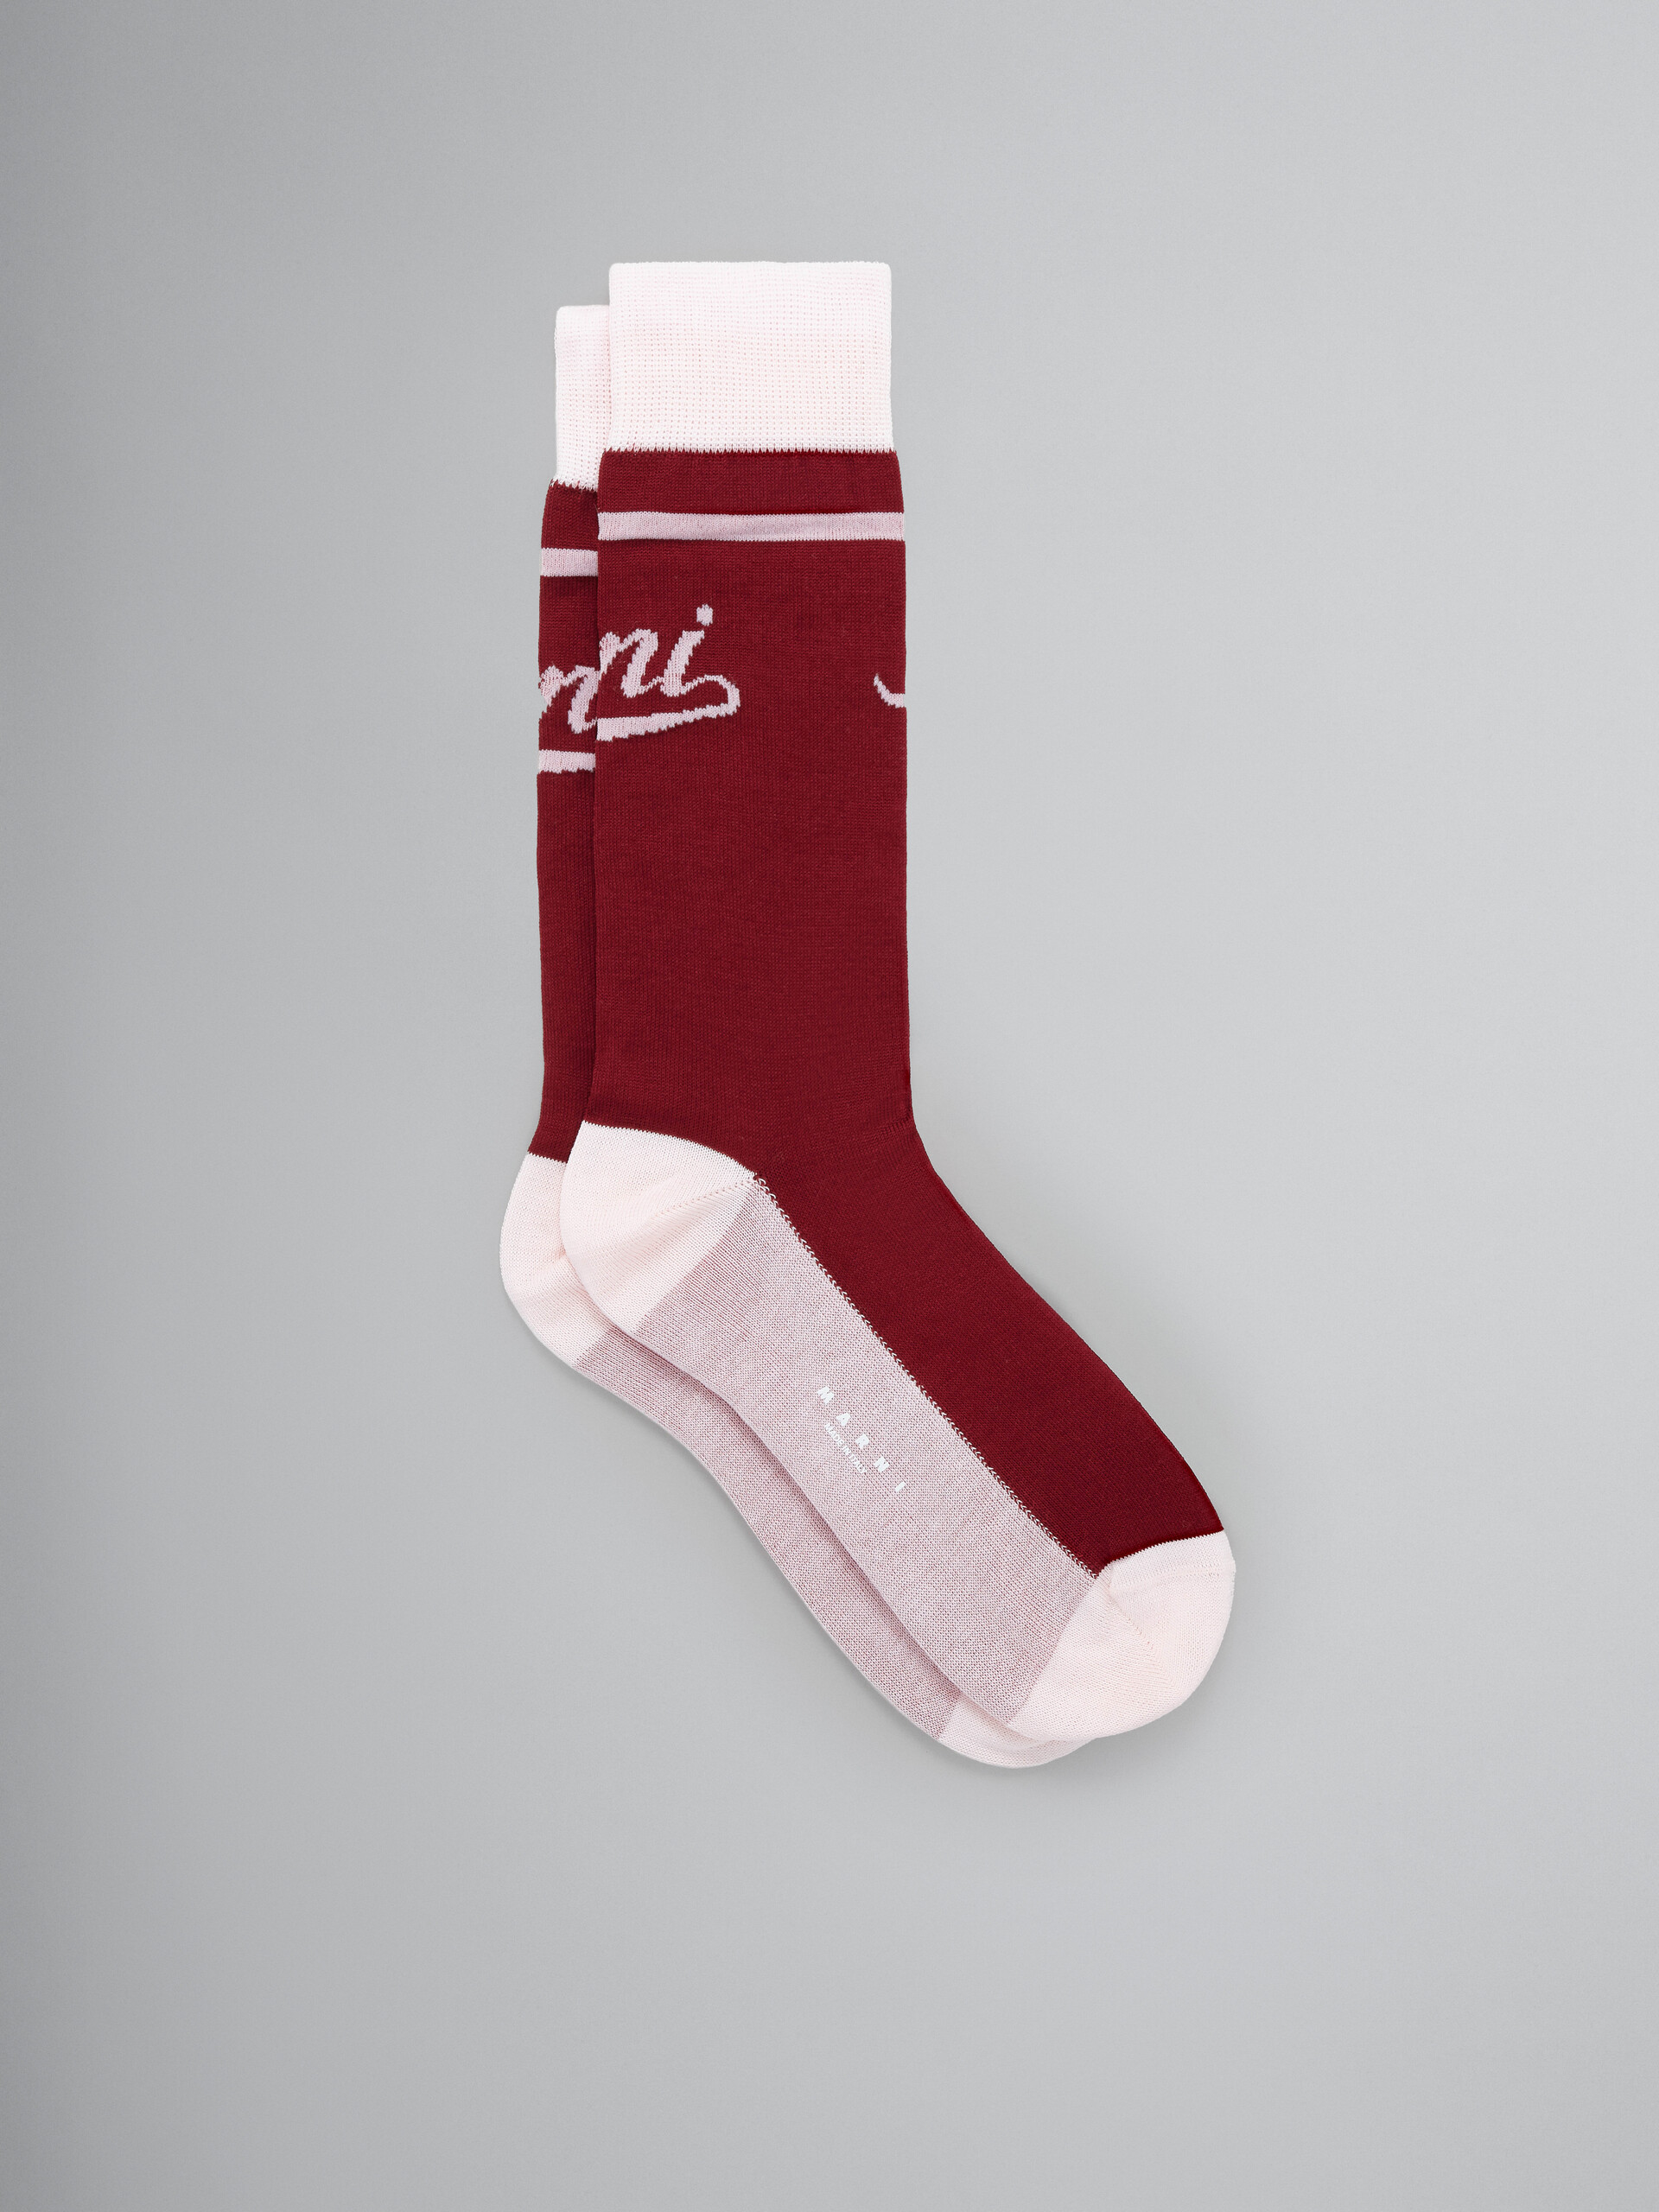 Burgundy and pink socks with logo - Socks - Image 1